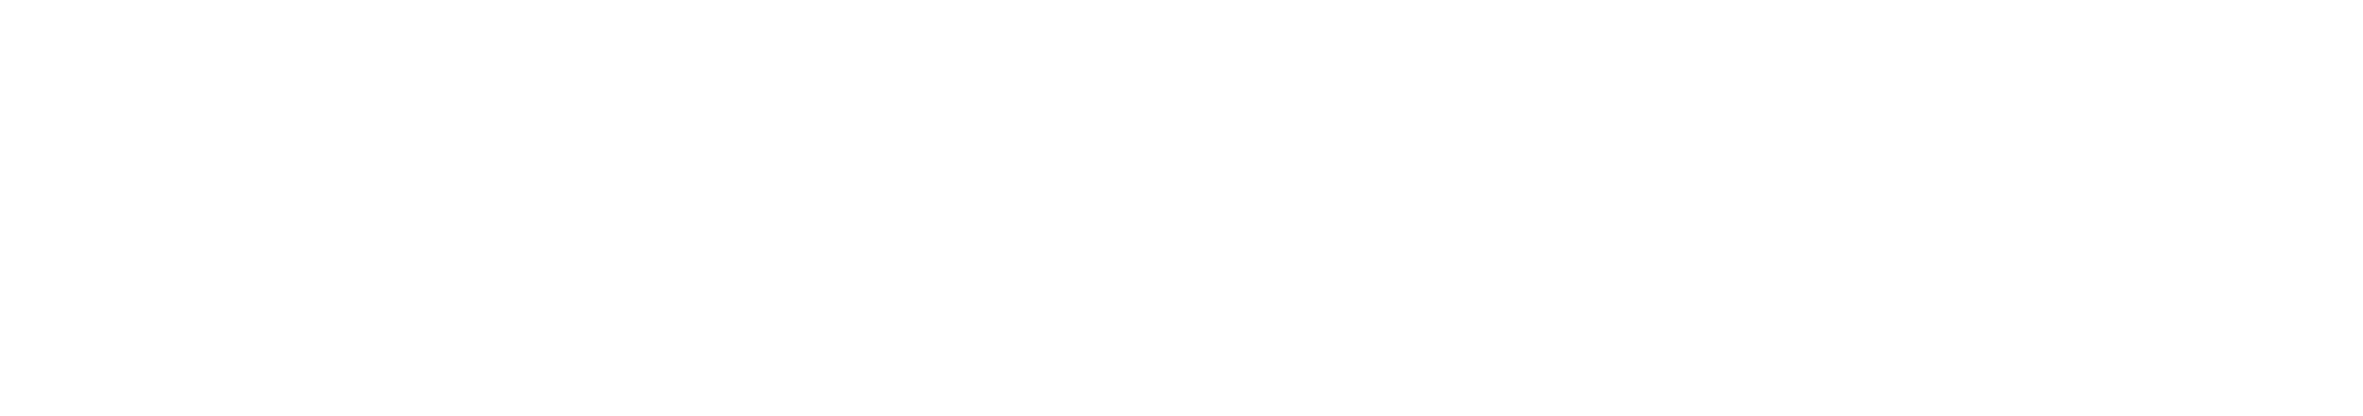 香港中文大學 The Chinese University of Hong Kong